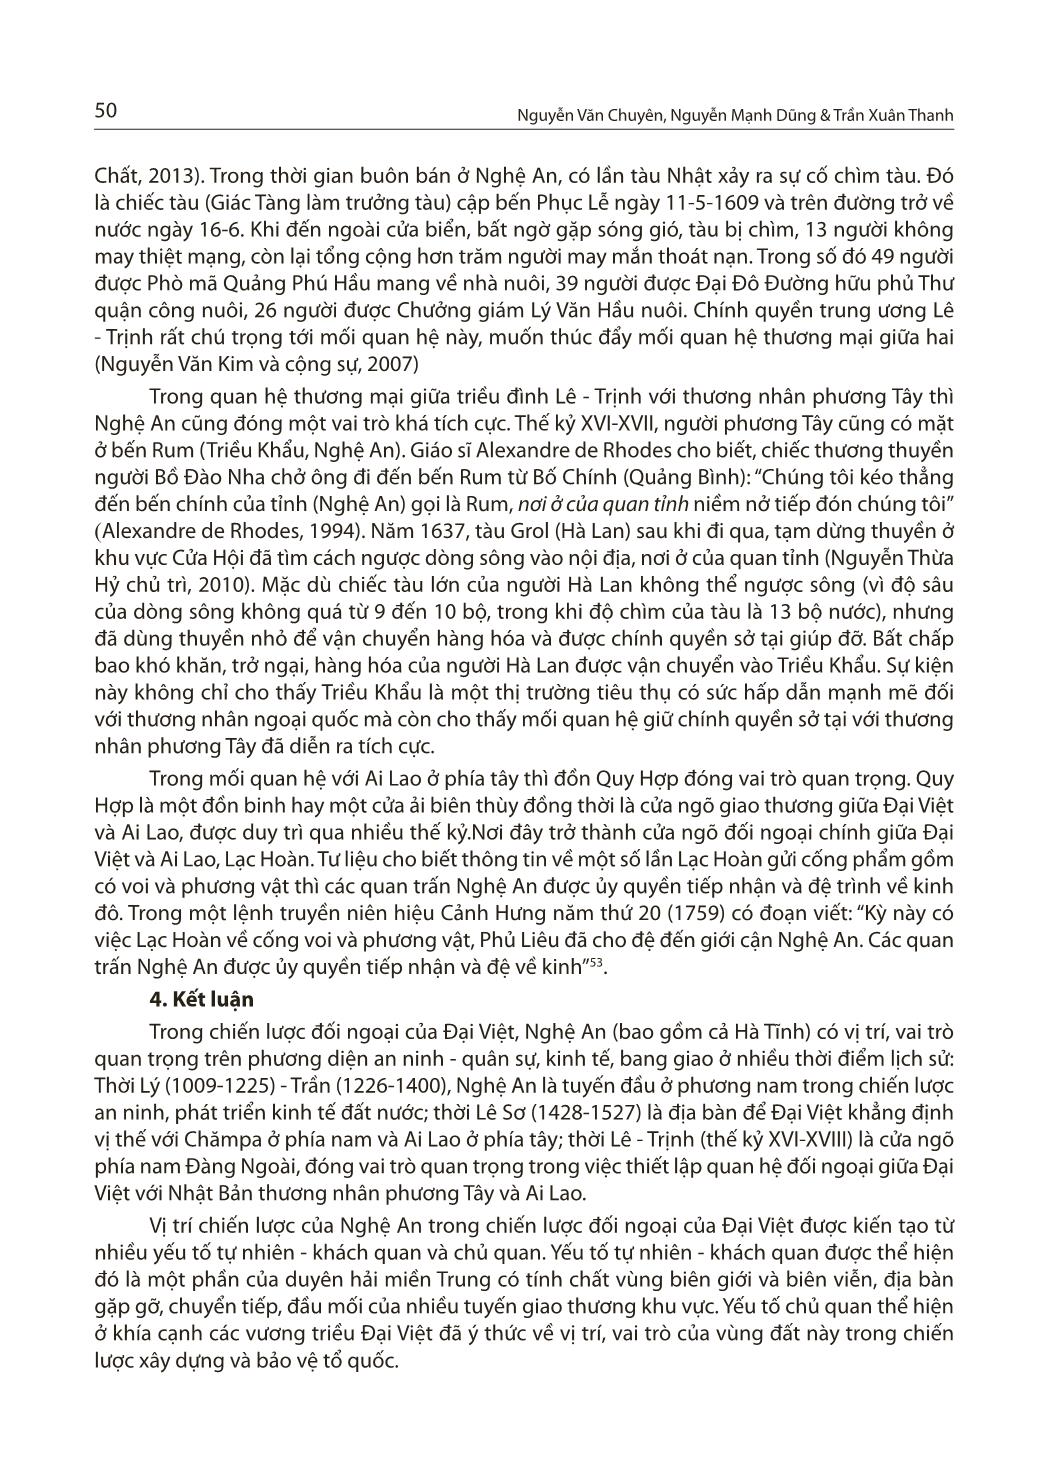 Nghệ An trong chiến lược đối ngoại của Đại Việt thời Lý - Trần - Lê (thế kỷ XI-XVIII) trang 8